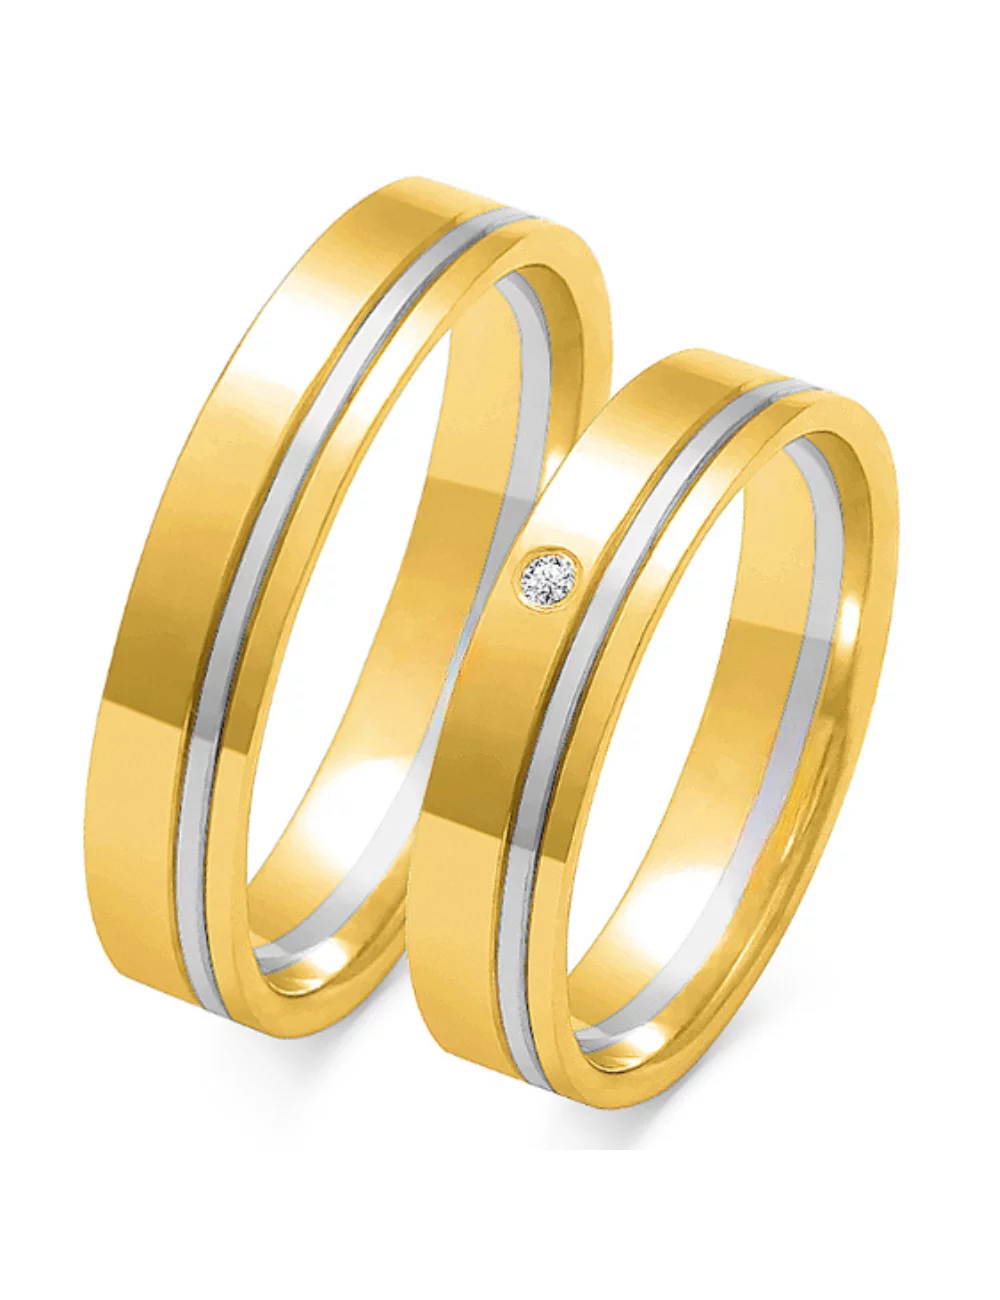 Vestuviniai žiedai - Sujungimas (4.5 mm)